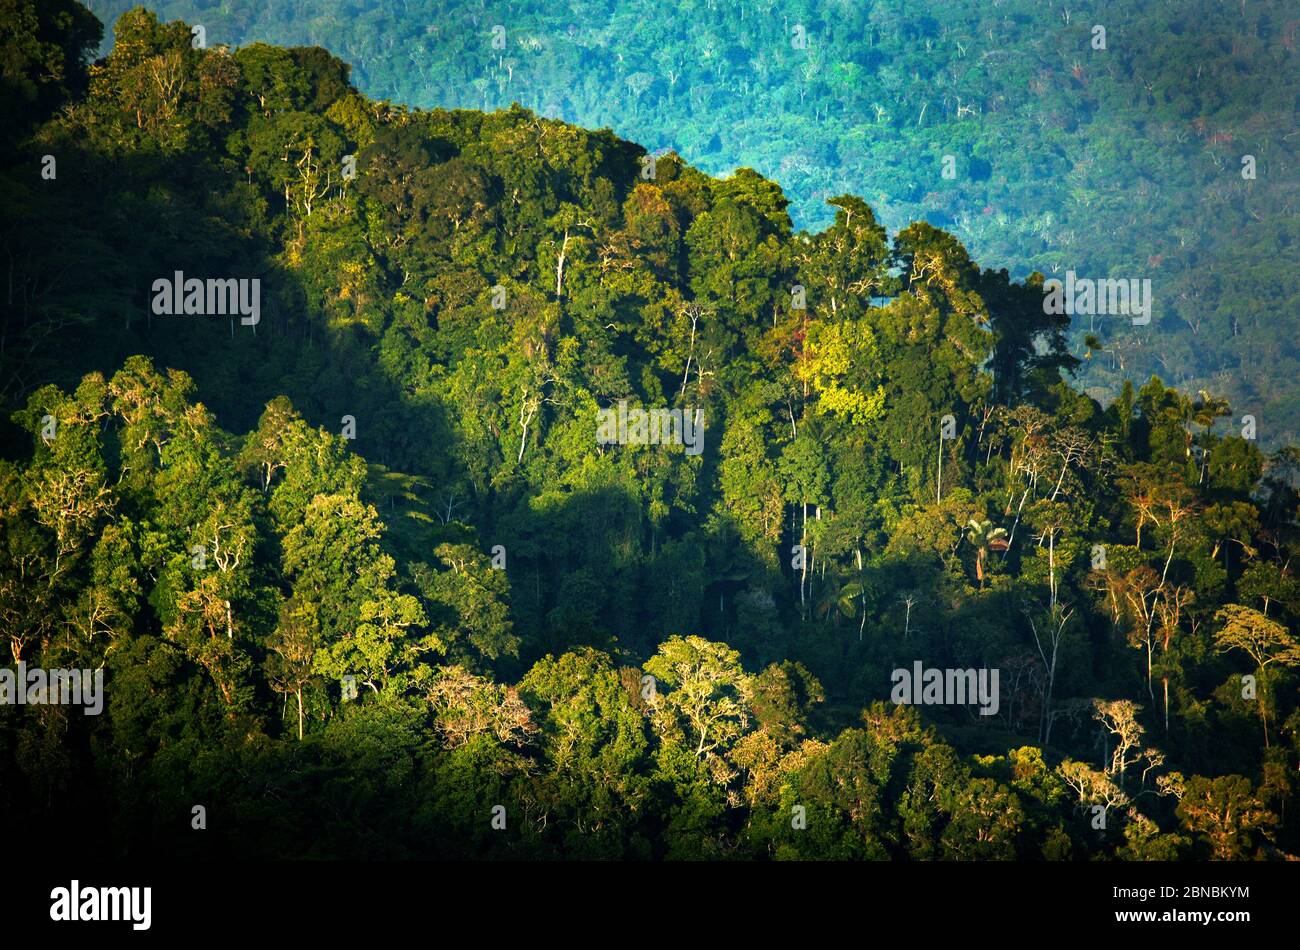 Lumière du soir sur la forêt tropicale luxuriante de Cerro Pirre dans le parc national de Darien, province de Darien, République de Panama, Amérique centrale. Banque D'Images